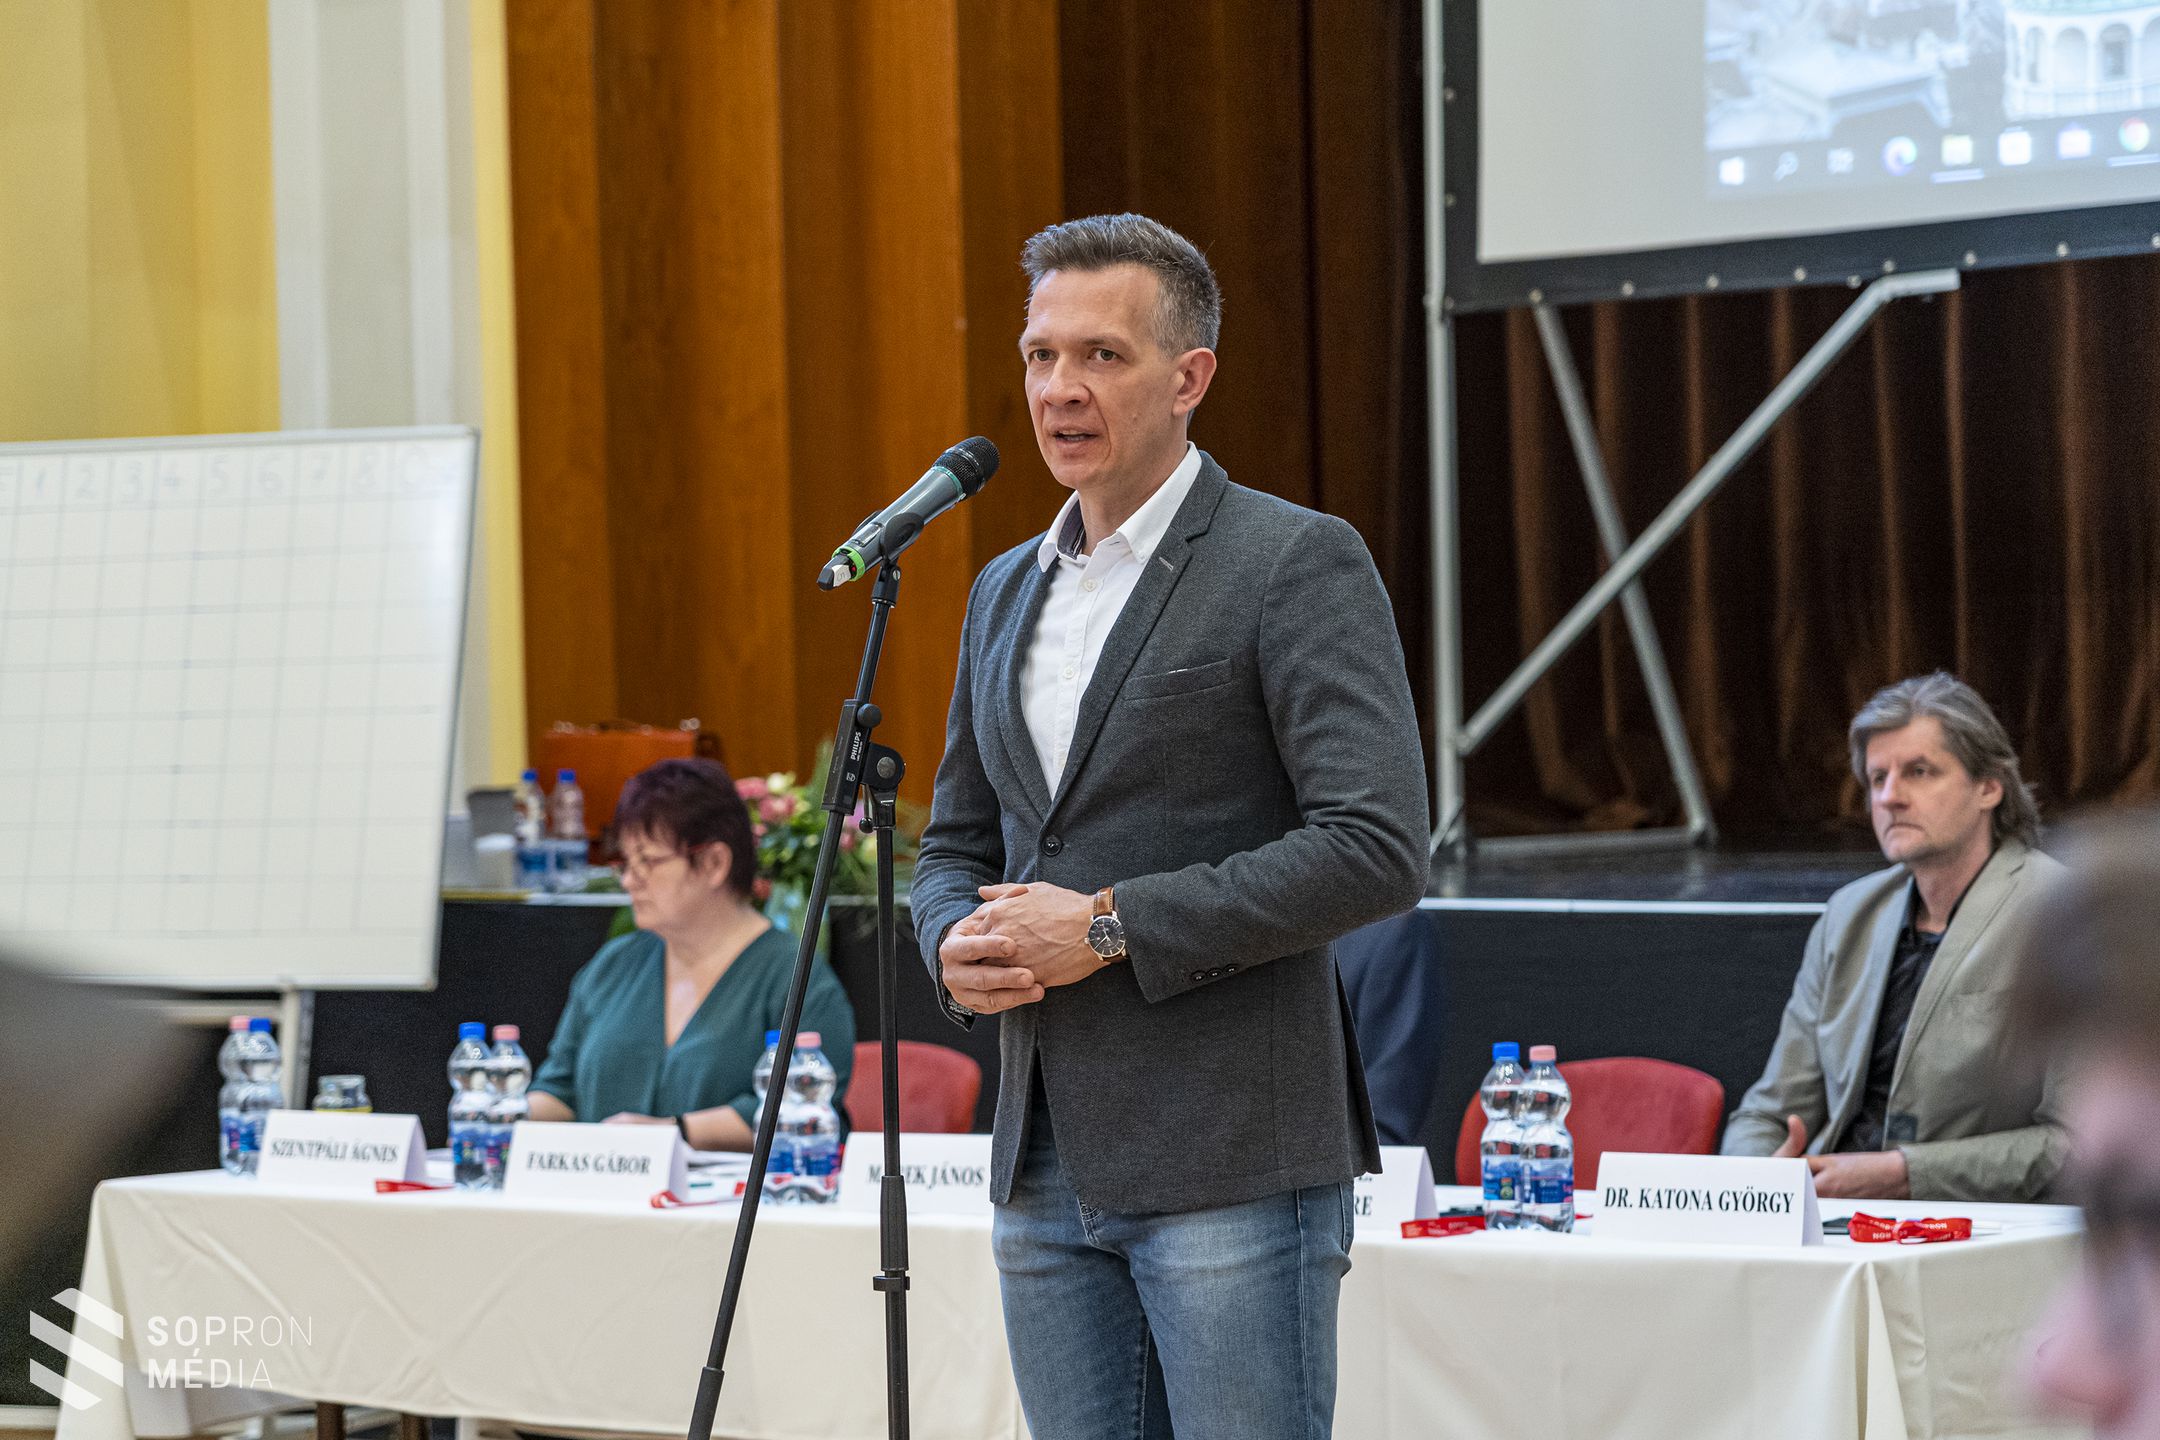 Országos történelmi vetélkedőt tartottak a soproni népszavazás 100. évfordulója alkalmából